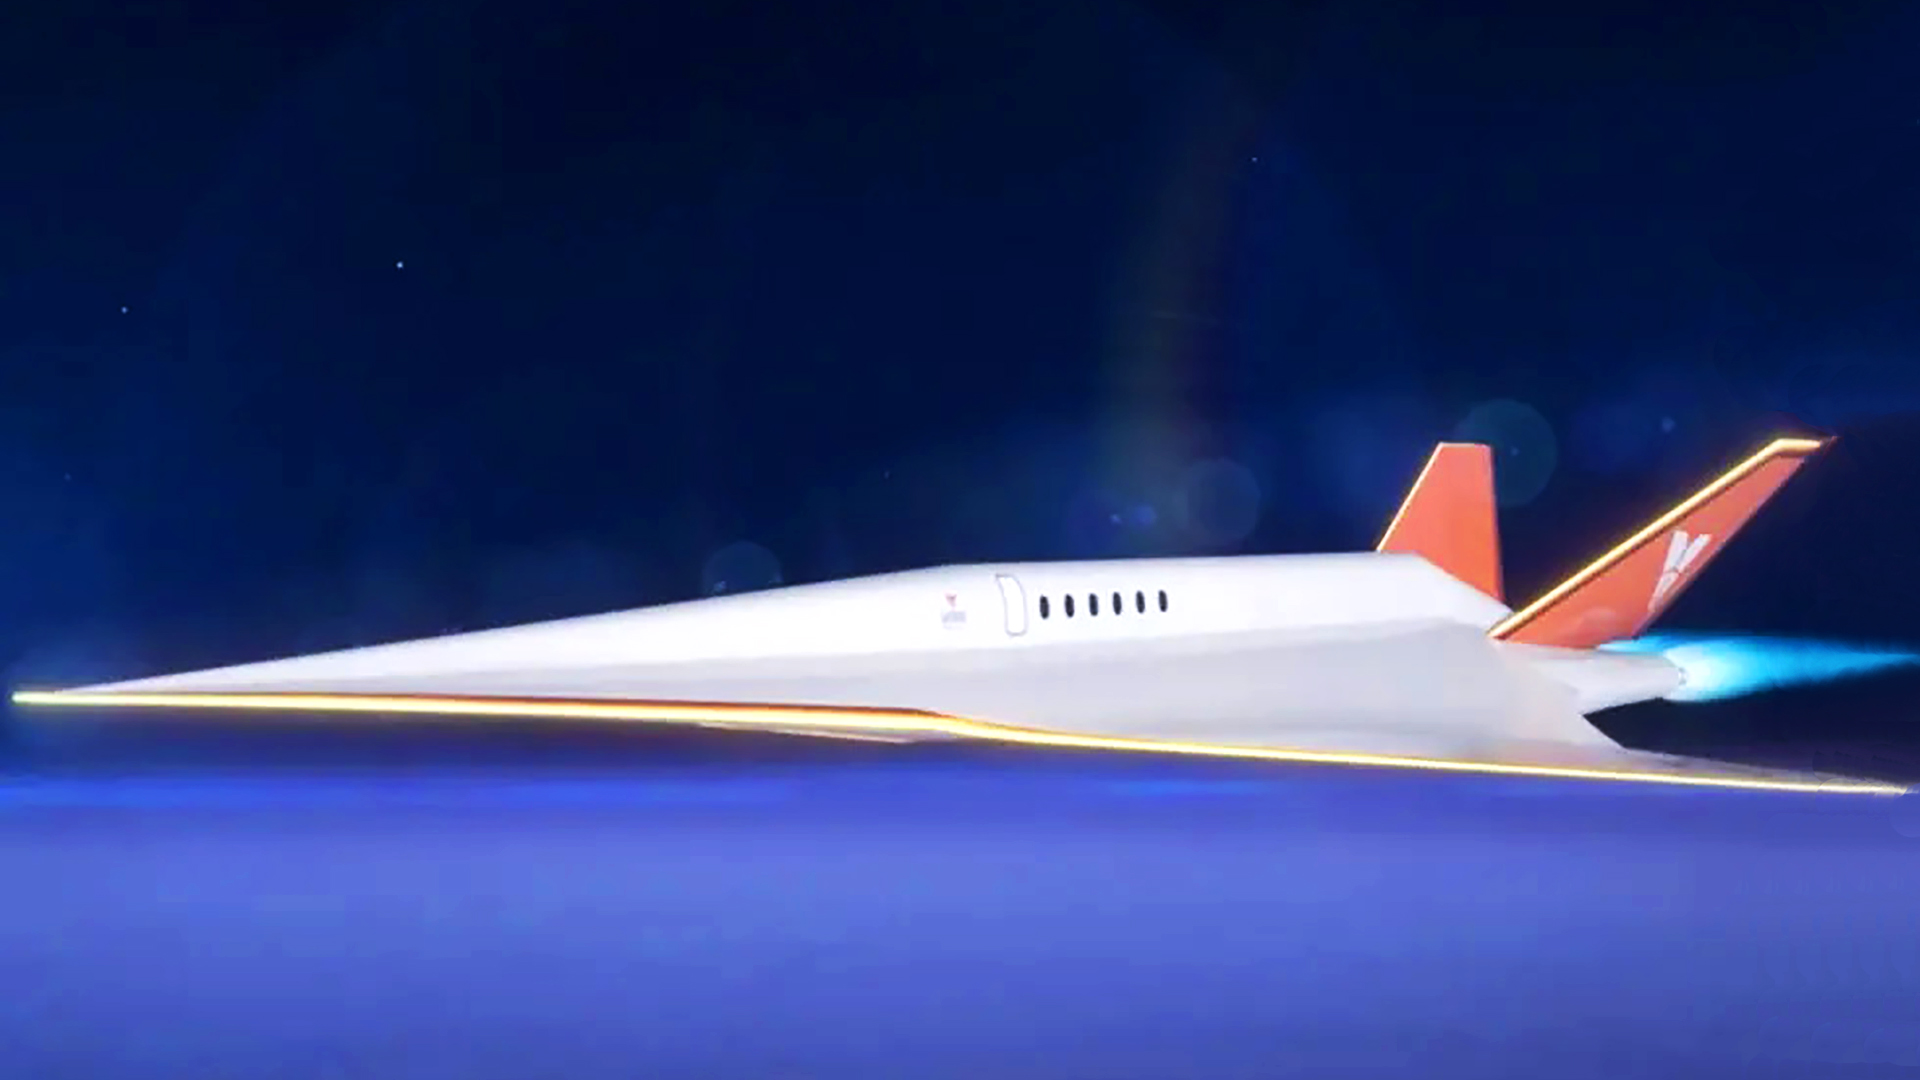 El Venus Stargazer tiene formas muy similares al Concorde, auque tendrá capacidad para solamente 12 pasajeros